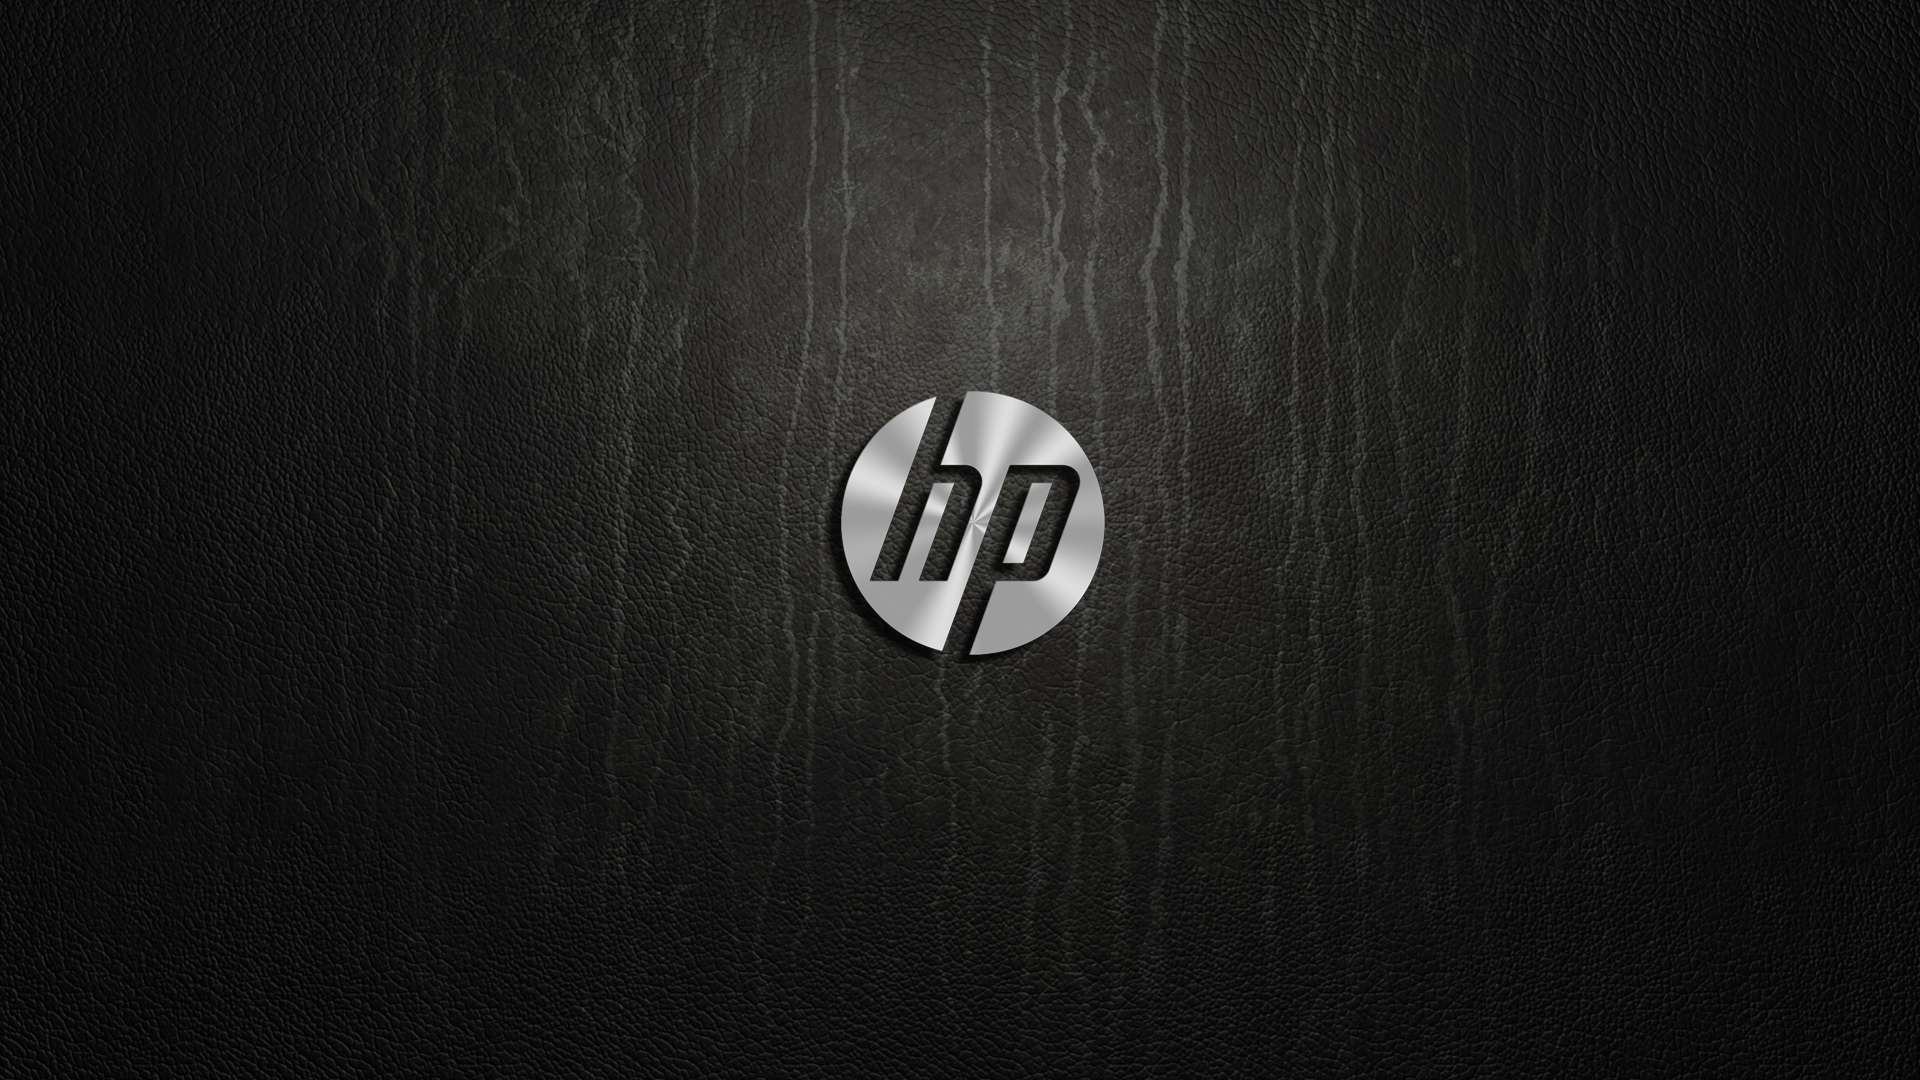 Hewlett-Packard Wallpapers - Wallpaper Cave